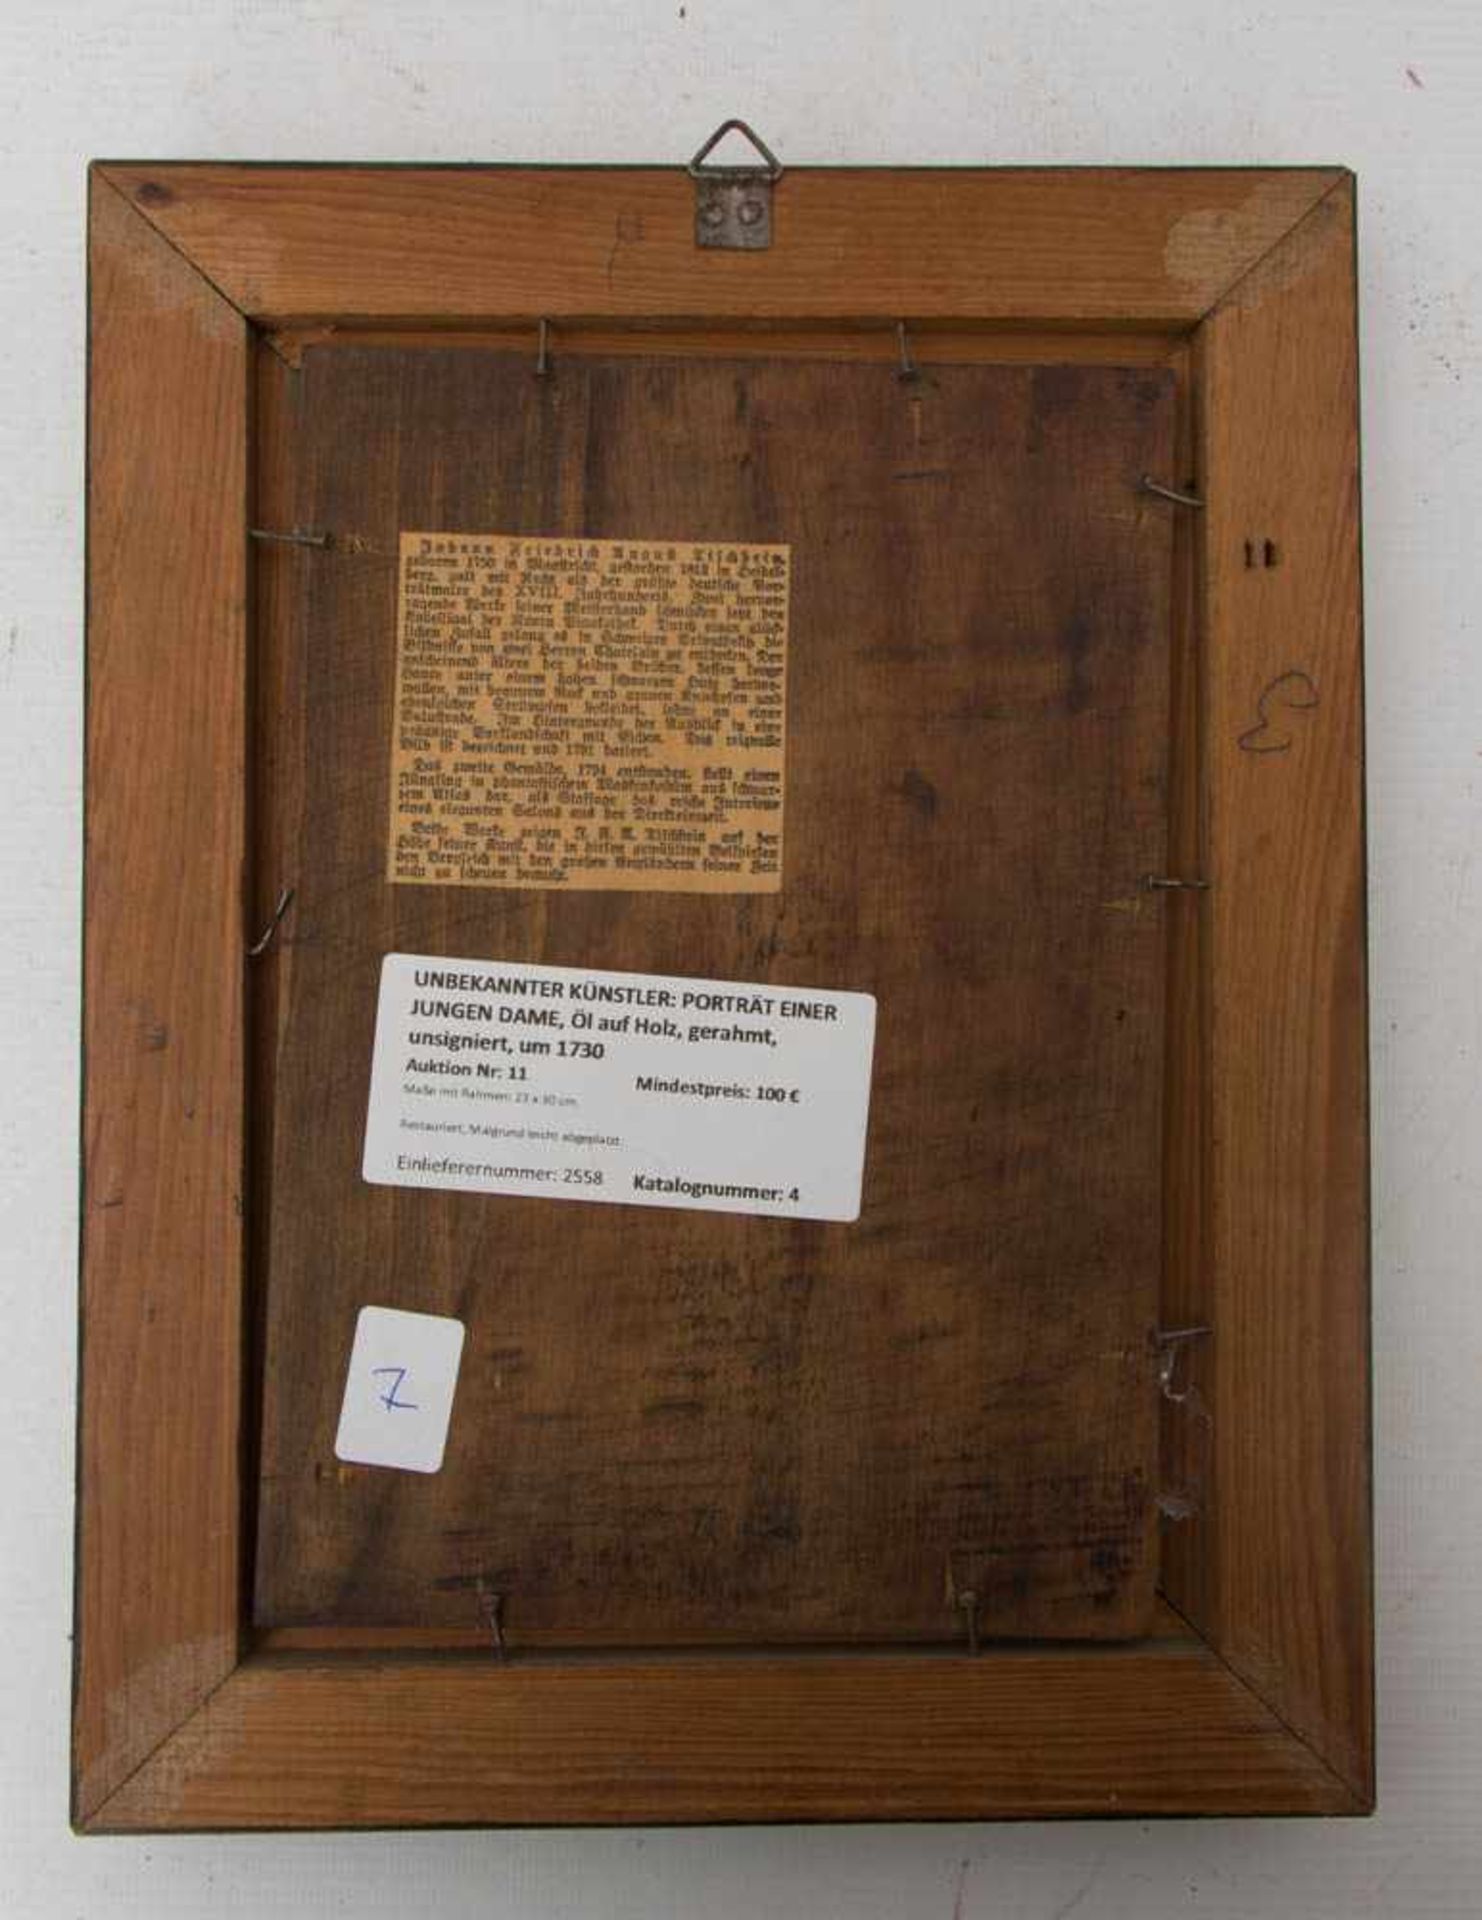 UNUNBEKANNTER KÜNSTLER: PORTRÄT EINER JUNGEN DAME, Öl auf Holz, gerahmt, unsigniert, um 1780.23 x 30 - Bild 3 aus 3